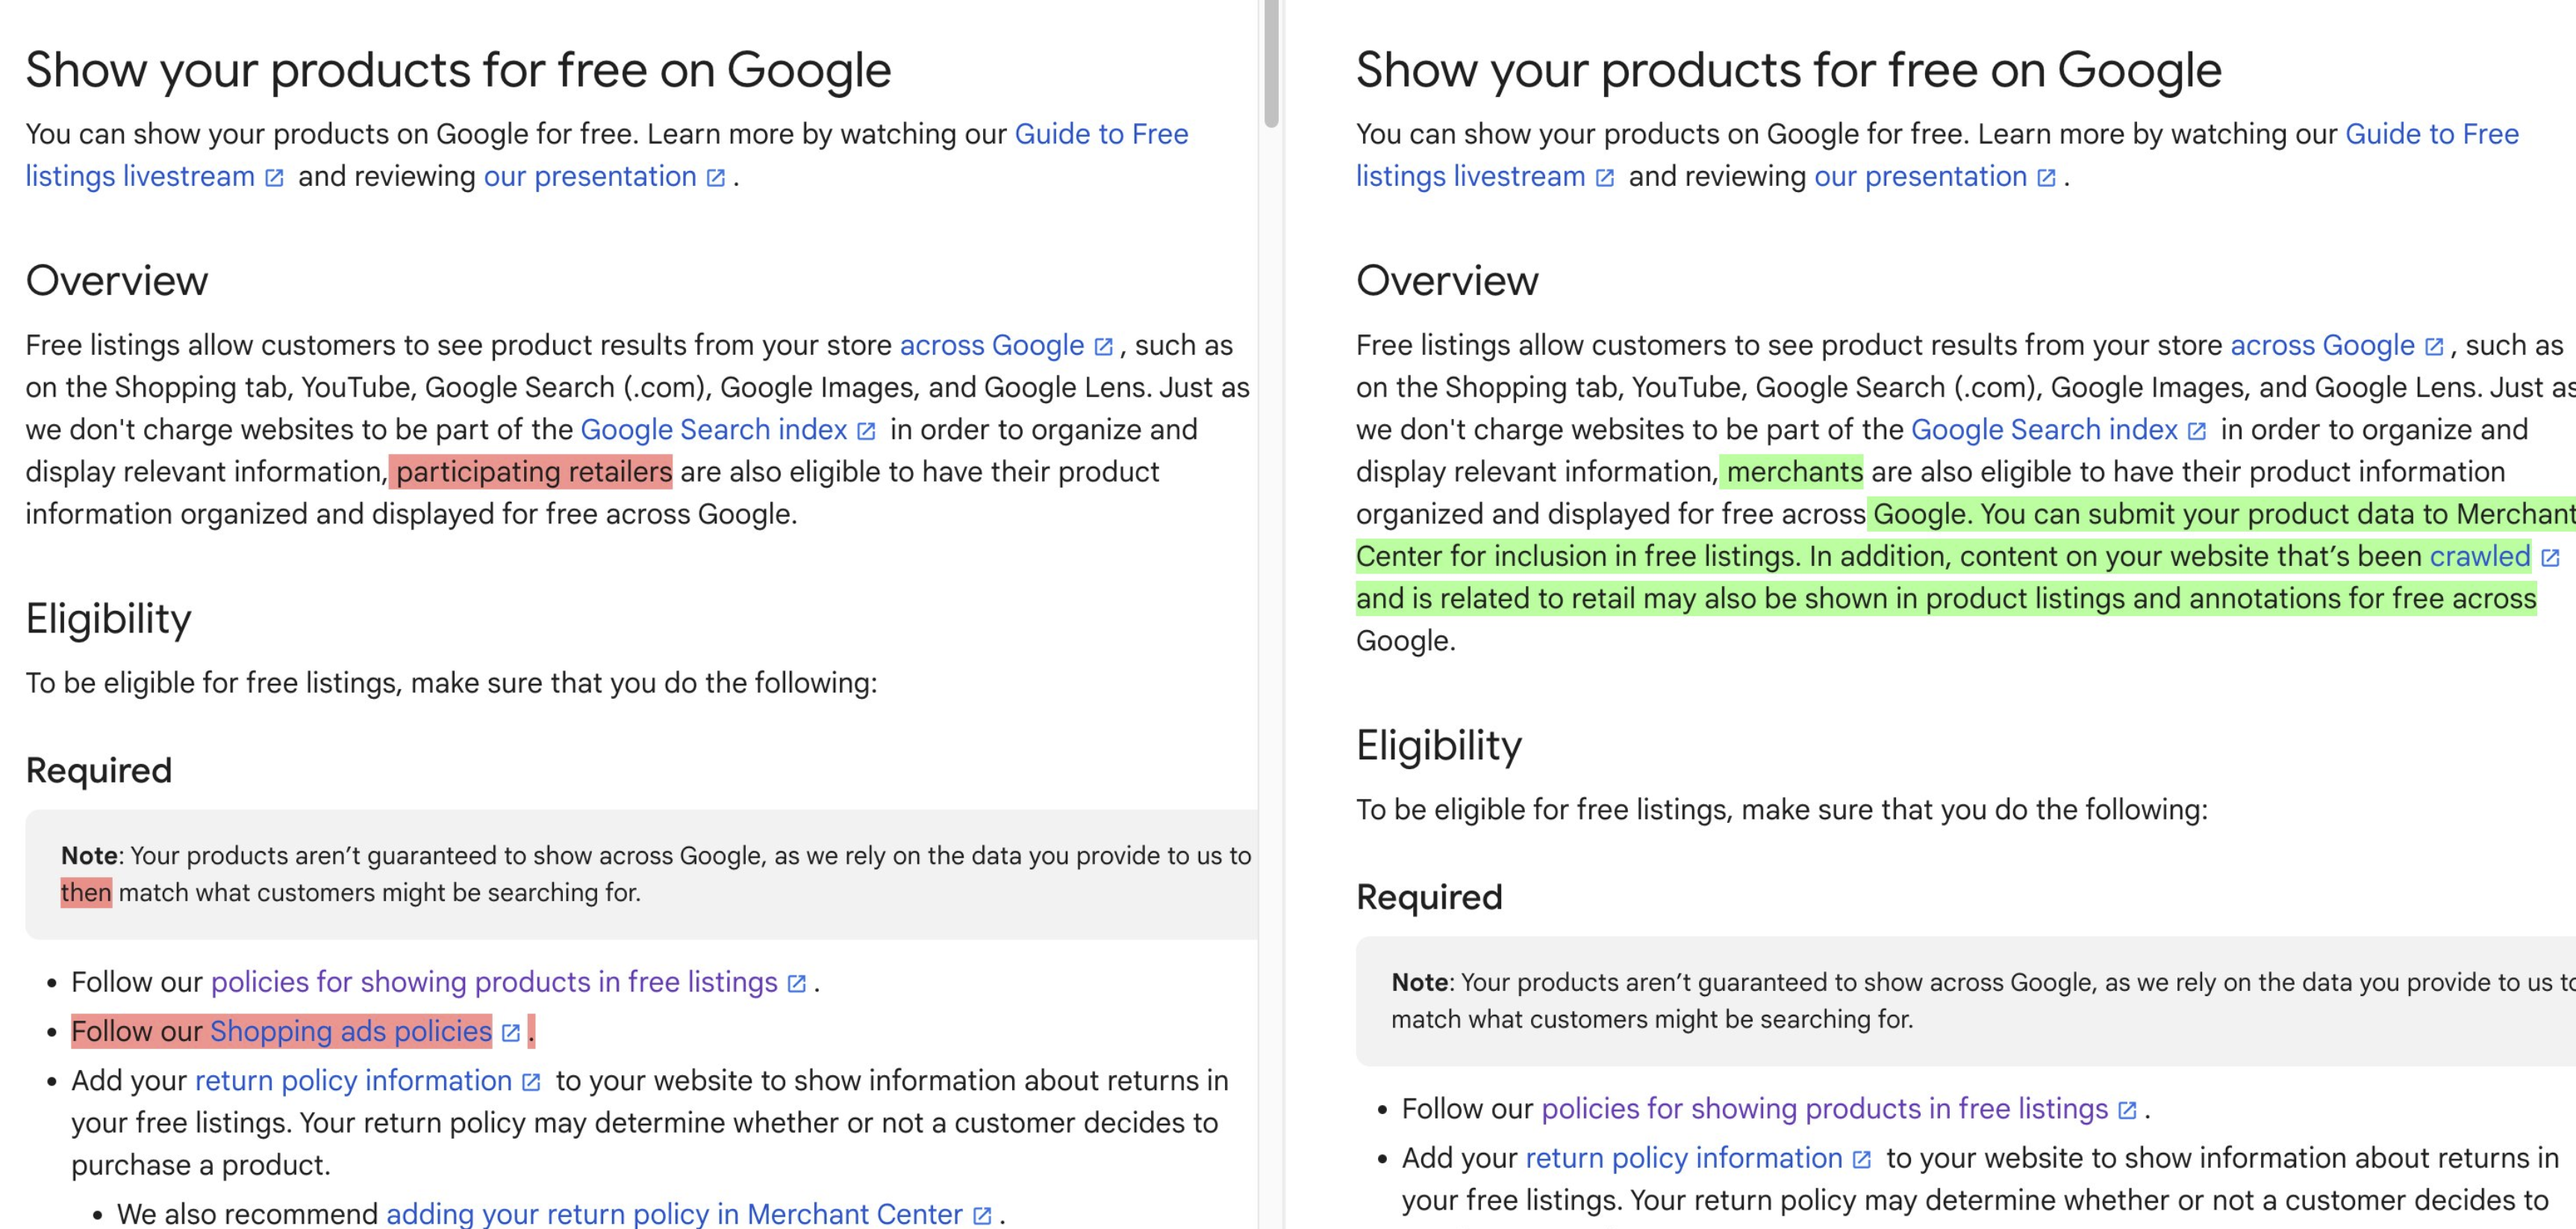 Google Dokumentation zu kostenlosen Product Listings jetzt mit Hinweis, dass auch gecrawlte Inhalte genutzt werden